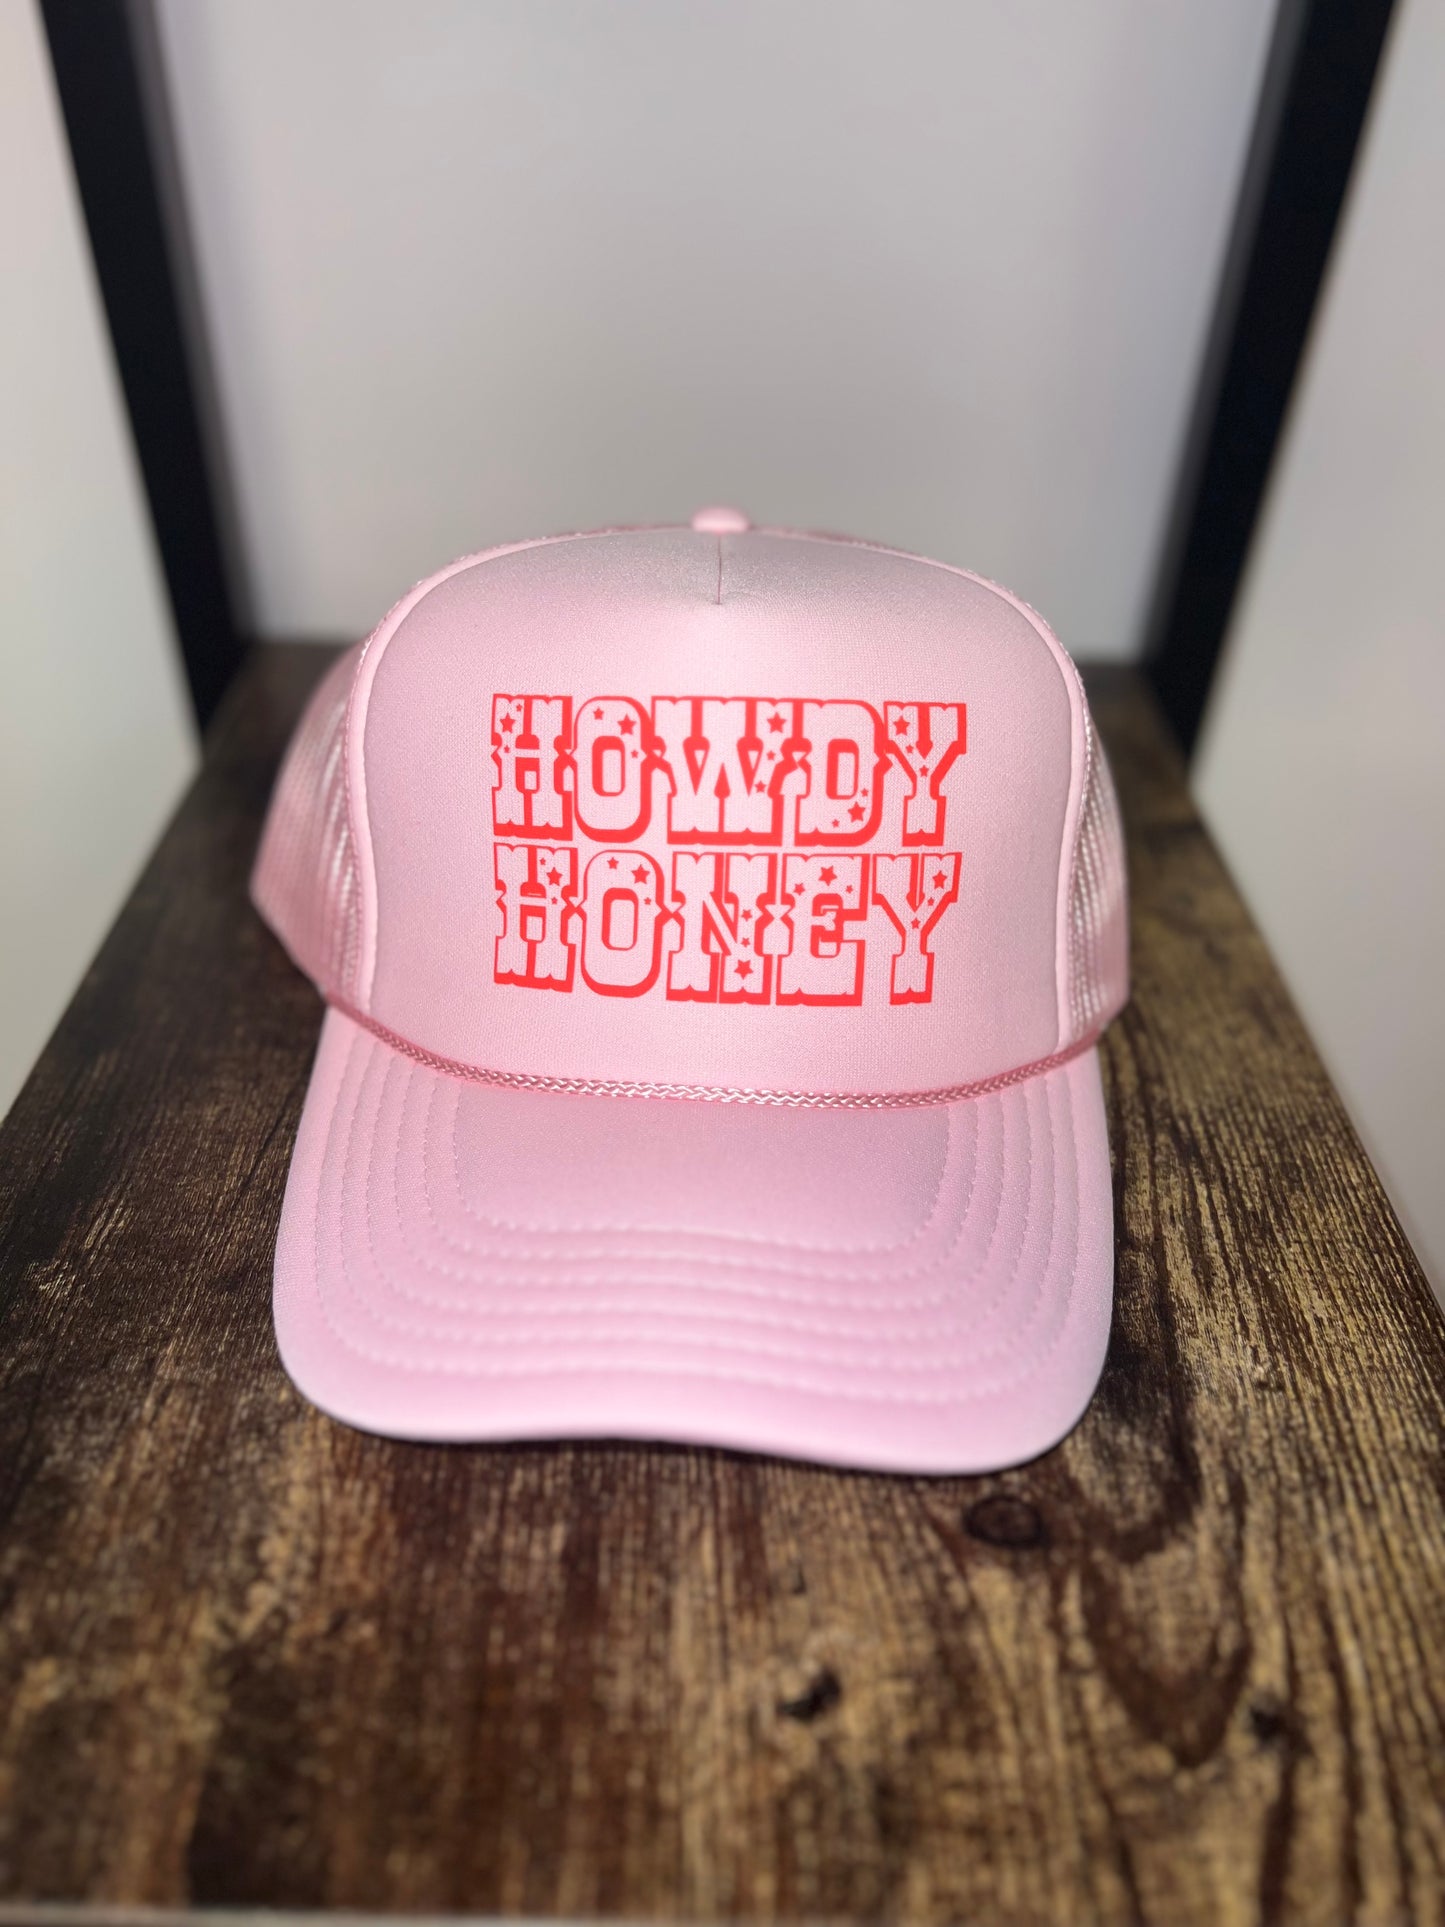 Western Howdy Trucker Hat Cap